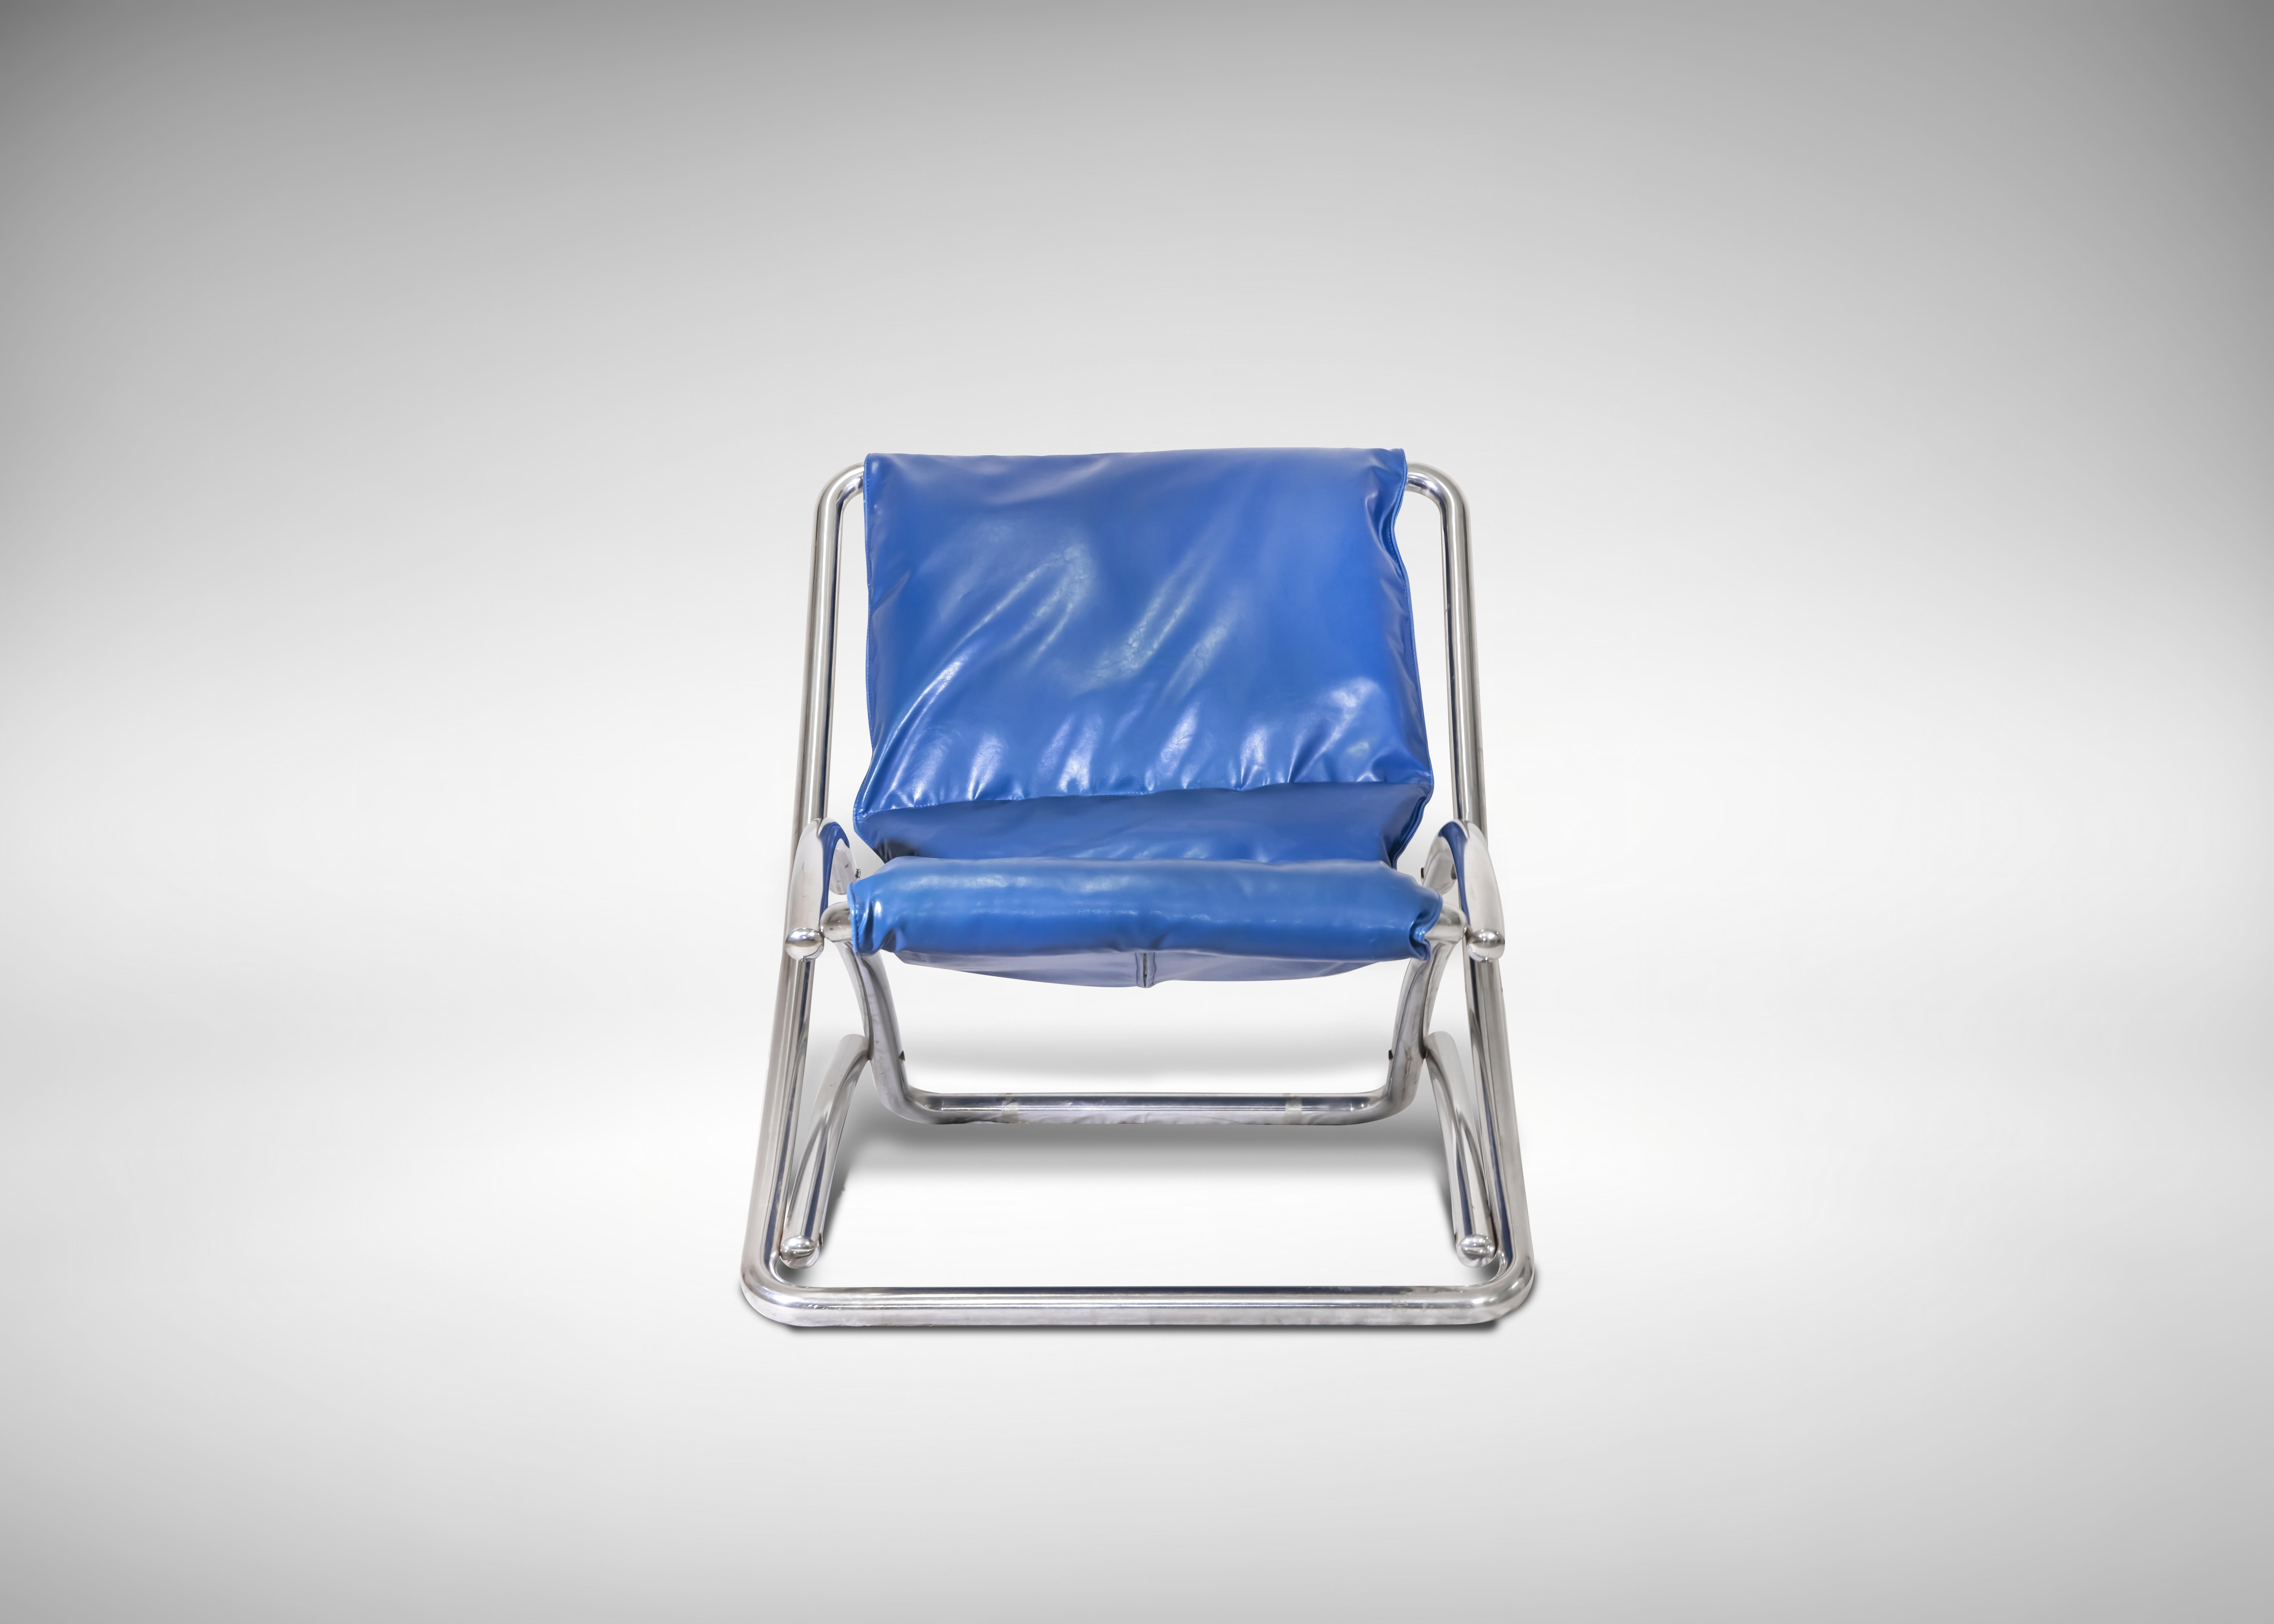 Folding Tubular Chromed Steel Deckchair, Italy 1970s.

Blue Leather.

90 x 80 x 85 cm.

Good condition.